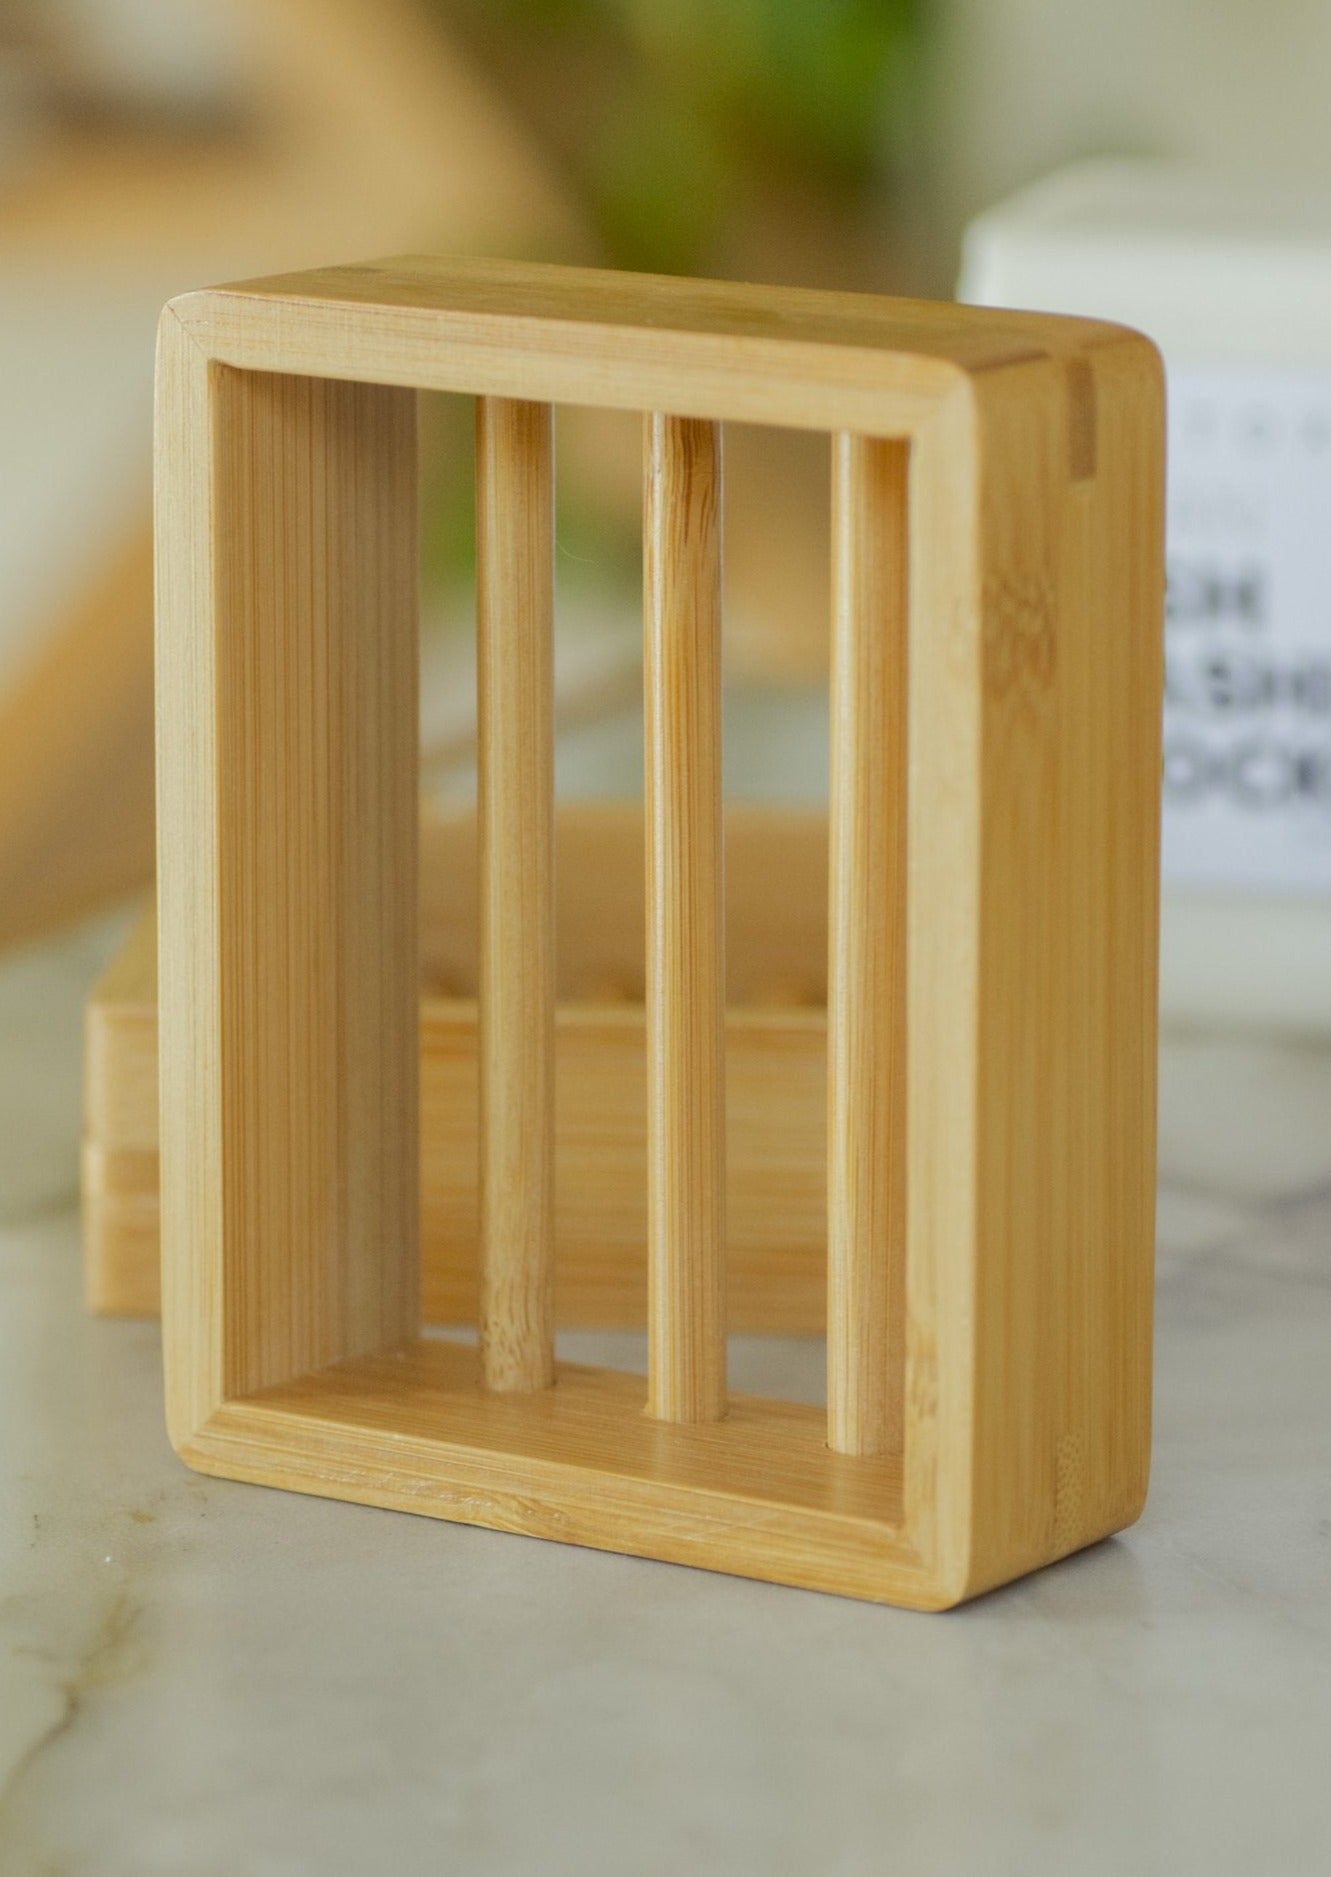 Bamboo wood slated soap tray